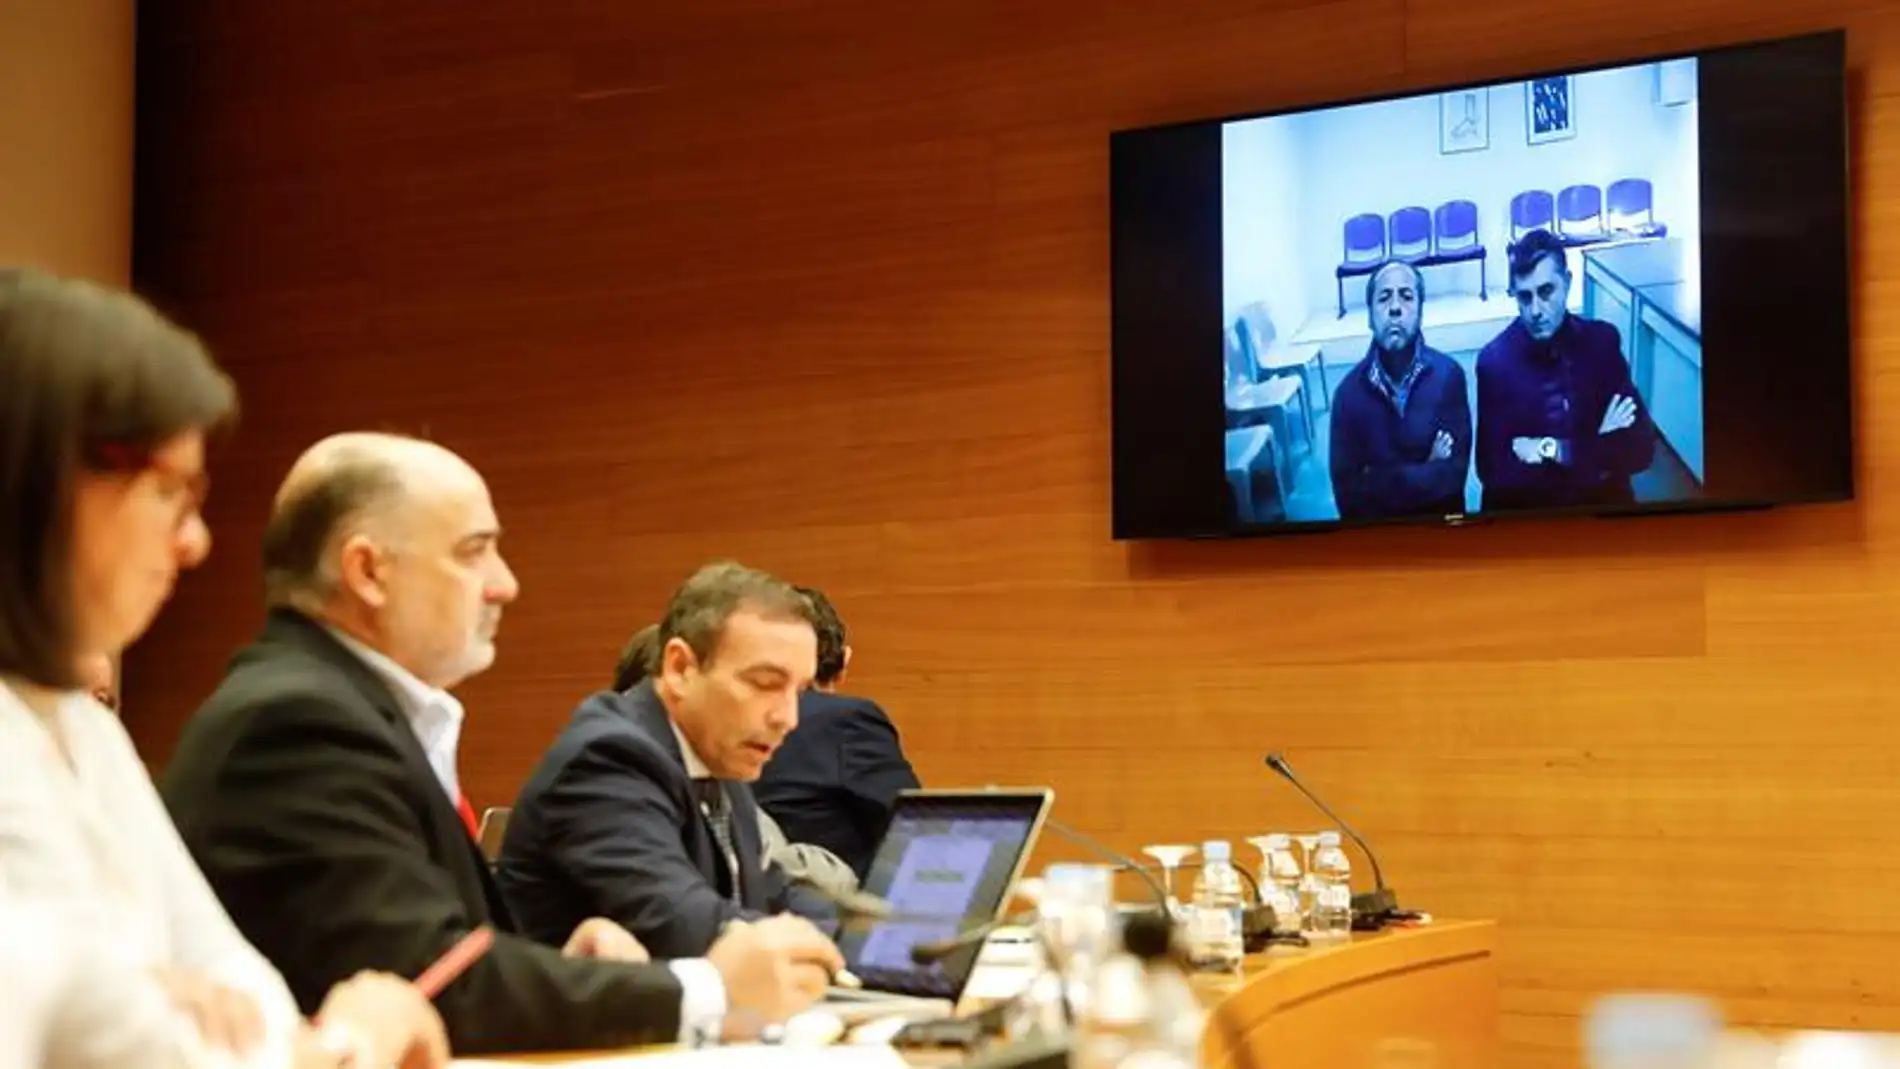 Declaran por videoconferencia los cabecillas de la trama Gürtel Francisco Correa, Pablo Crespo y Álvaro Pérez "el Bigotes"